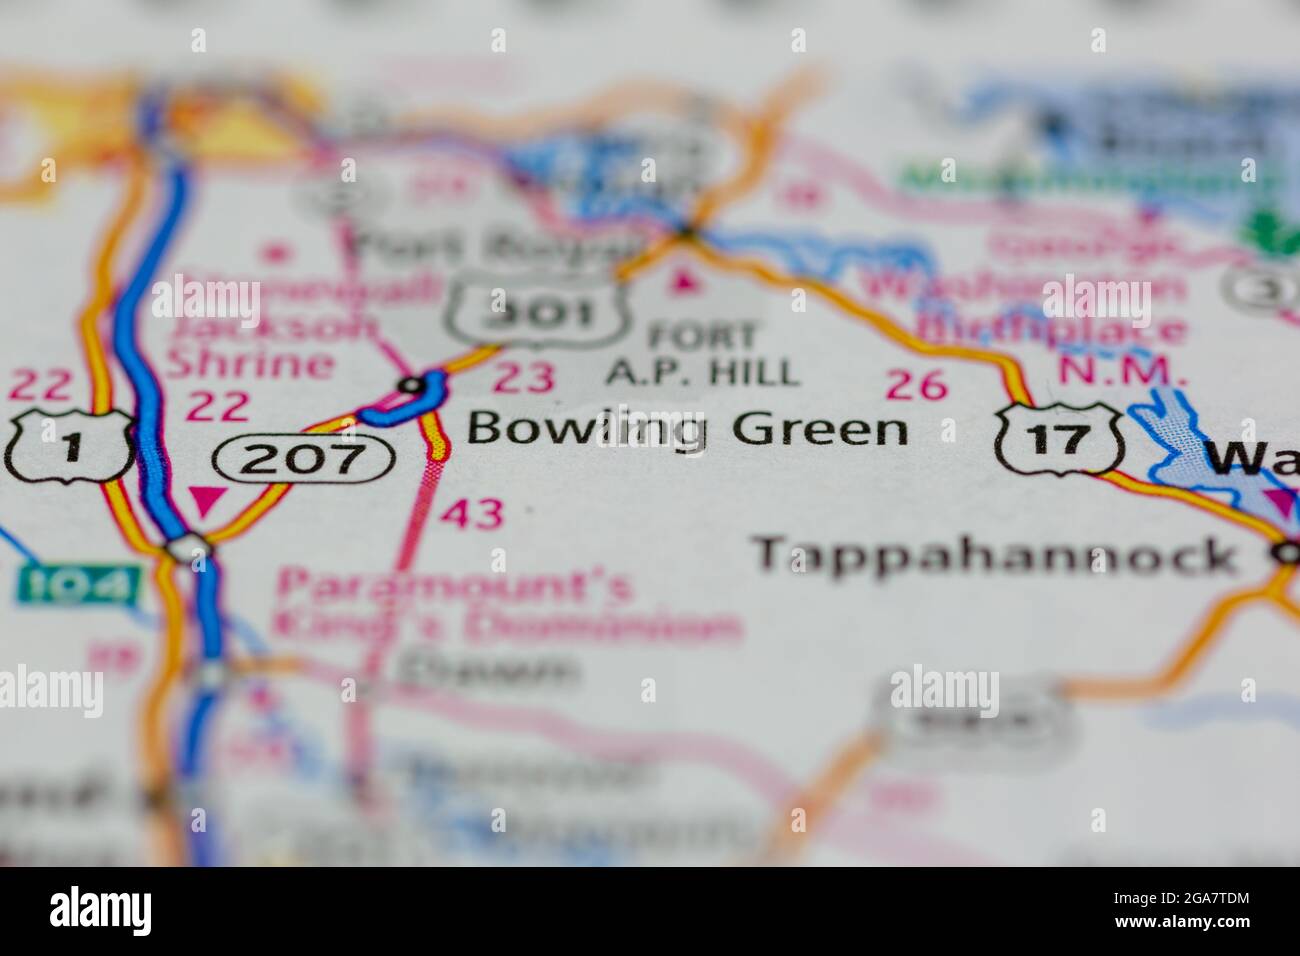 Bowling Green Virginia wird auf einer Straßenkarte oder Geografie-Karte angezeigt Stockfoto